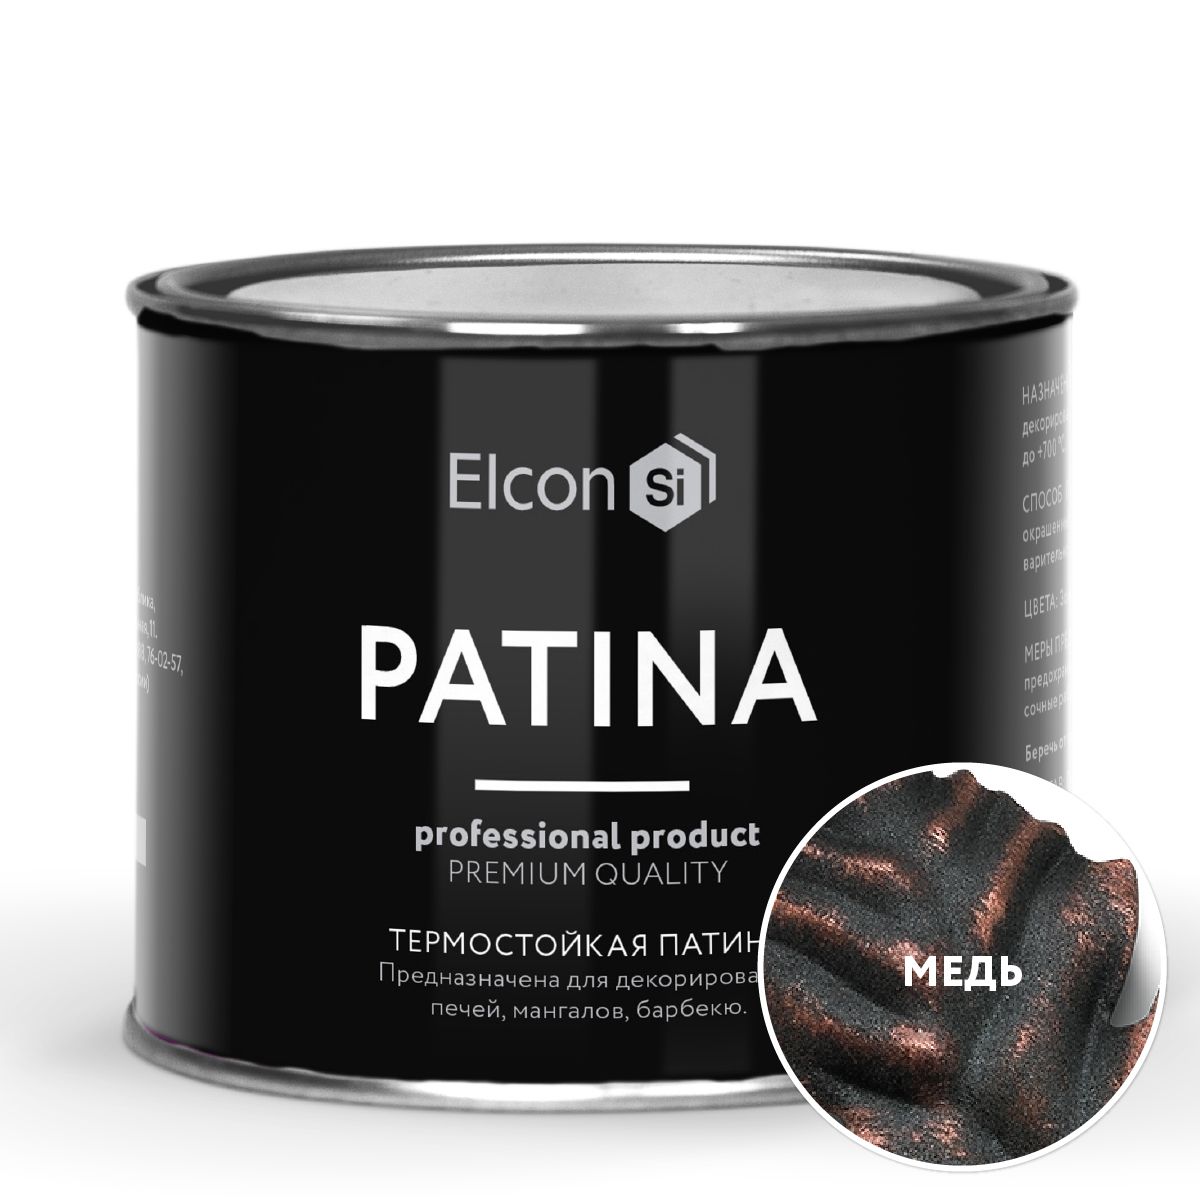 Термостойкая патина Elcon Patina + 700 градусов Медь 0,2 кг термостойкая патина elcon patina 700 градусов медь 0 2 кг